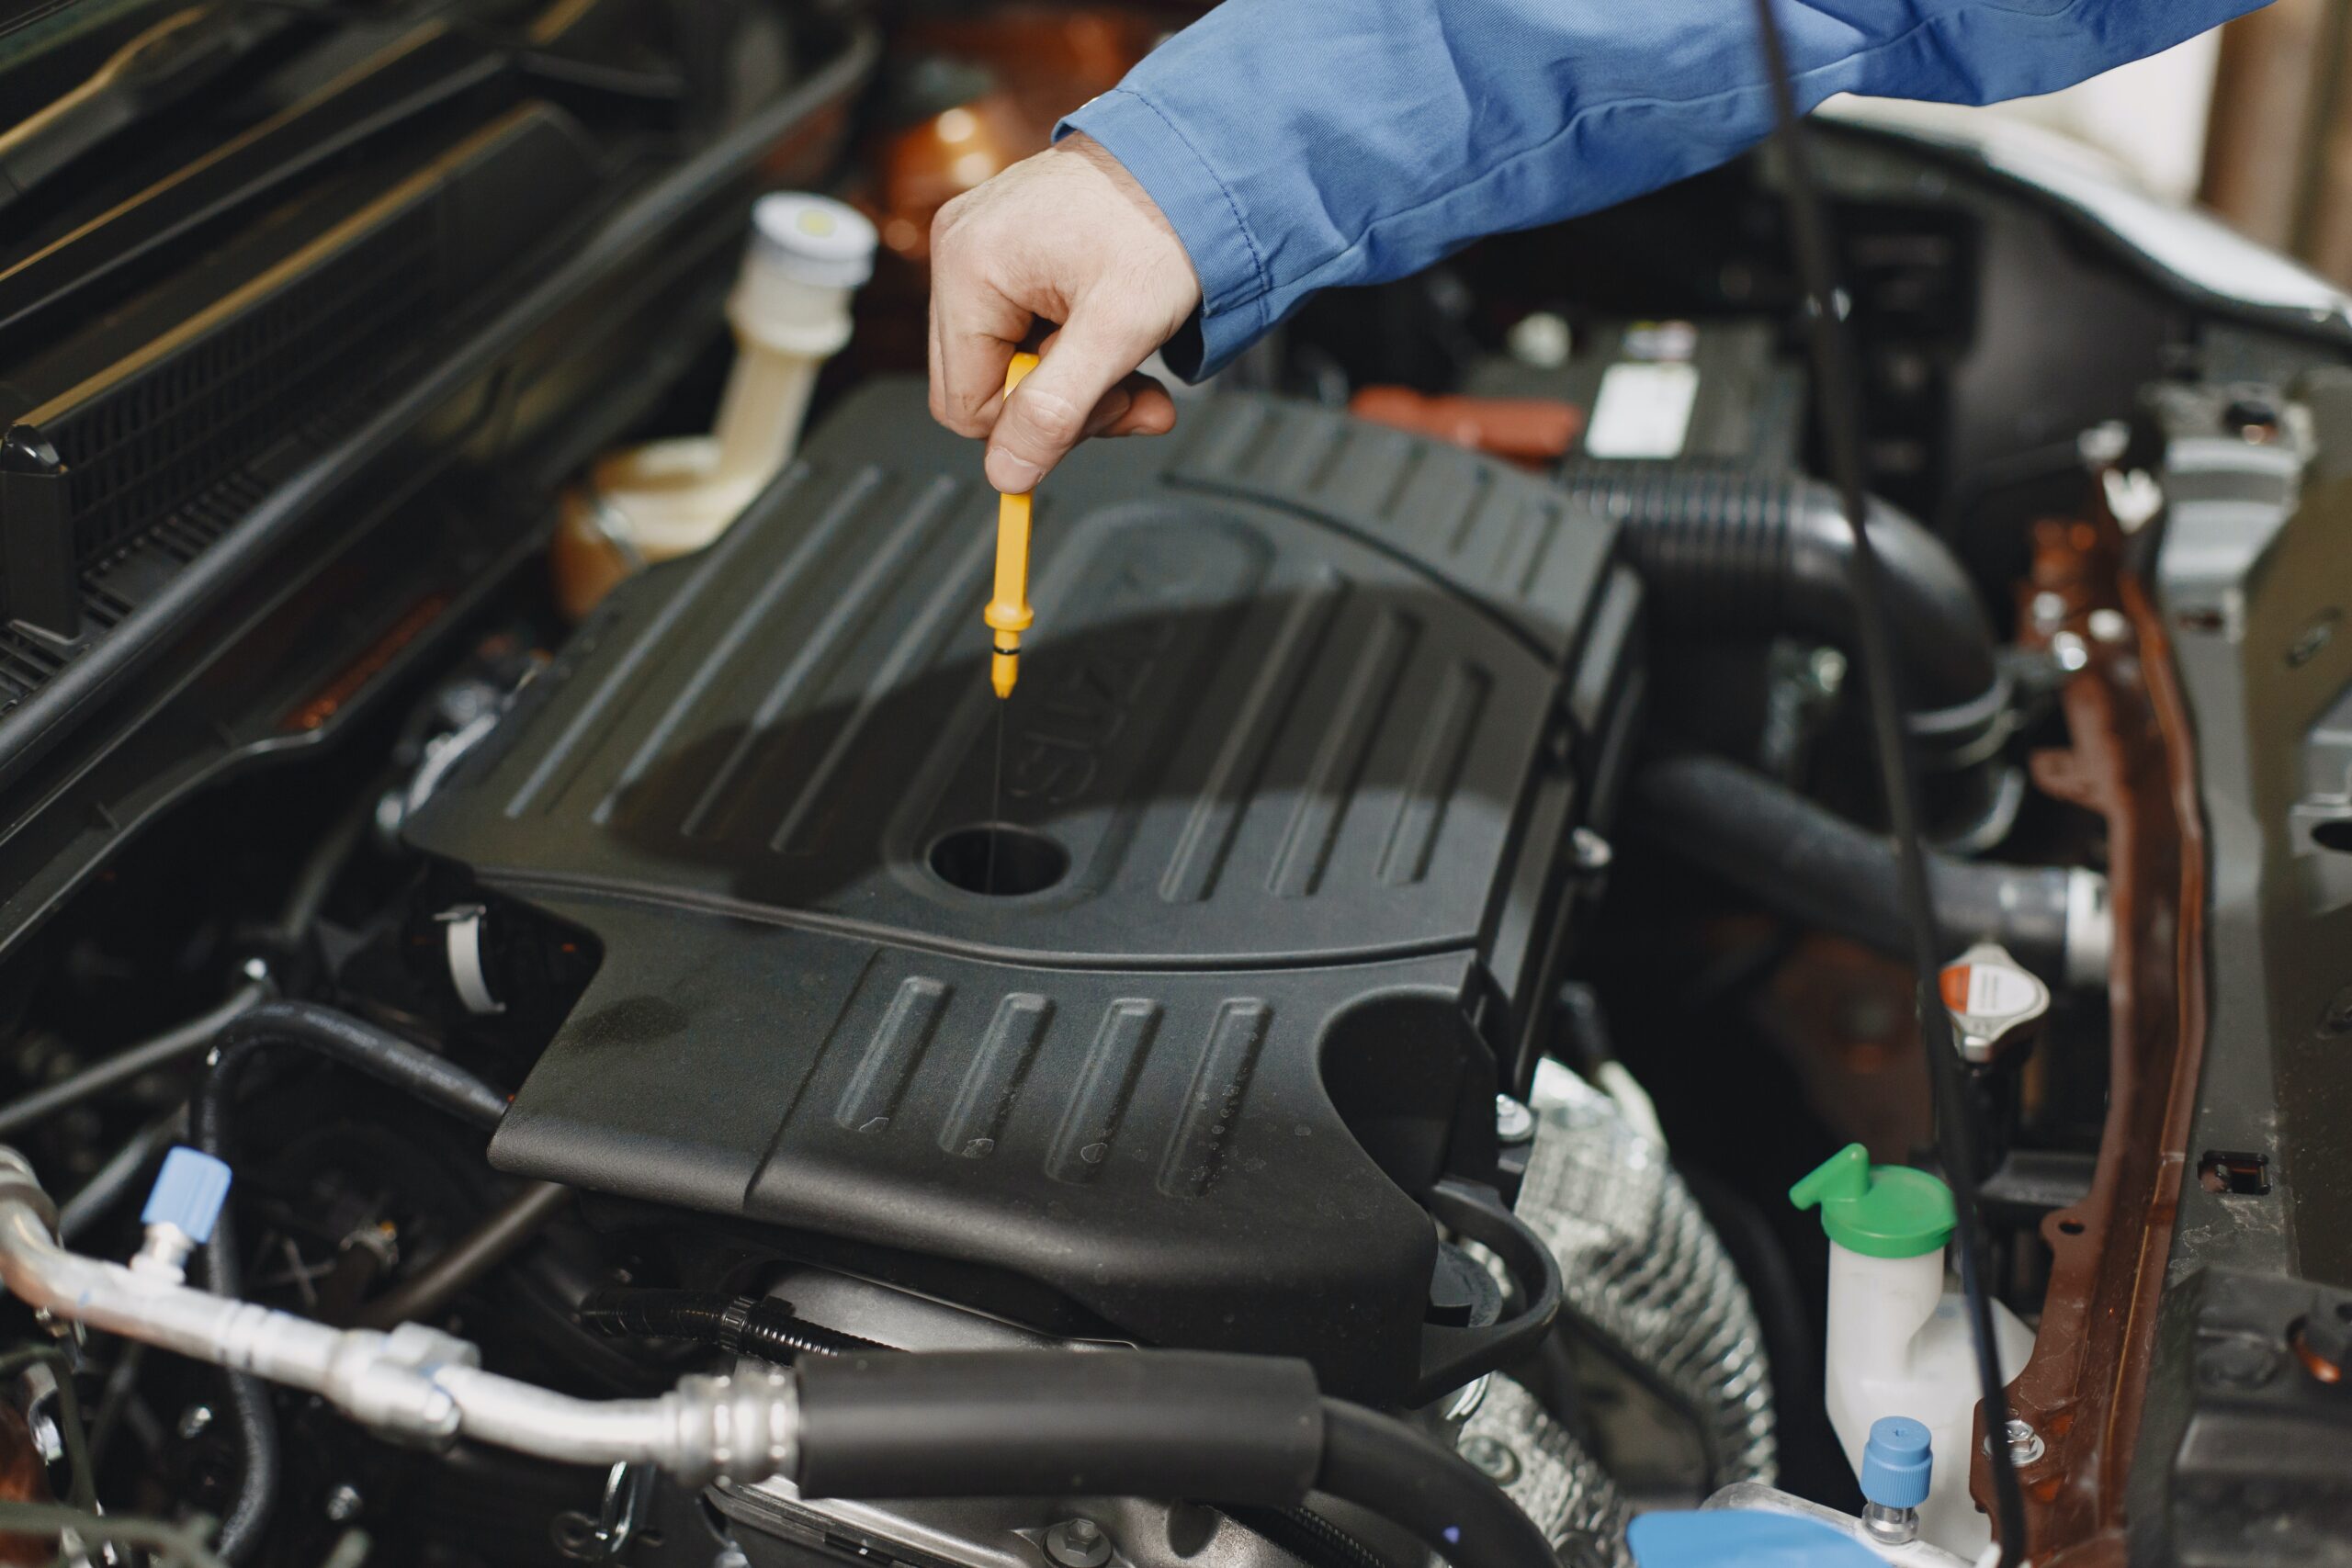 Quand doit-on changer le filtre à huile de notre voiture ?